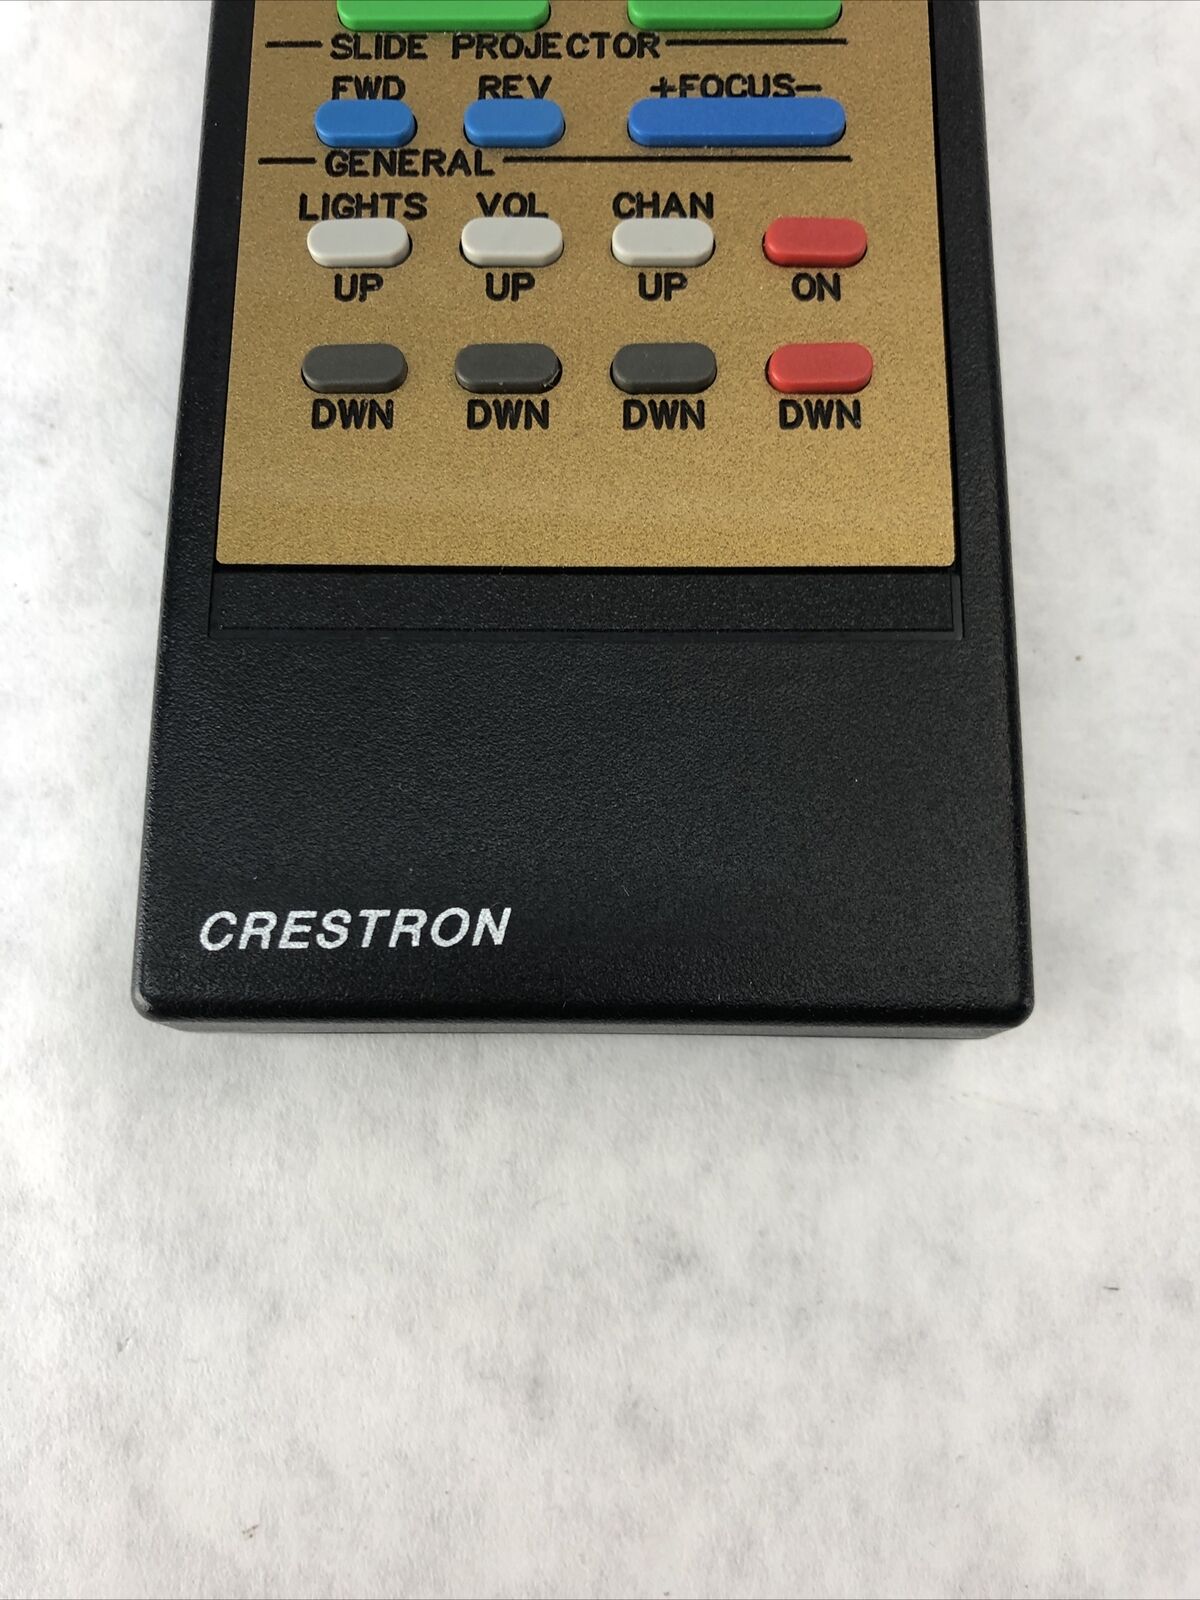 Crestron 56129 Vintage Remote Control - Black